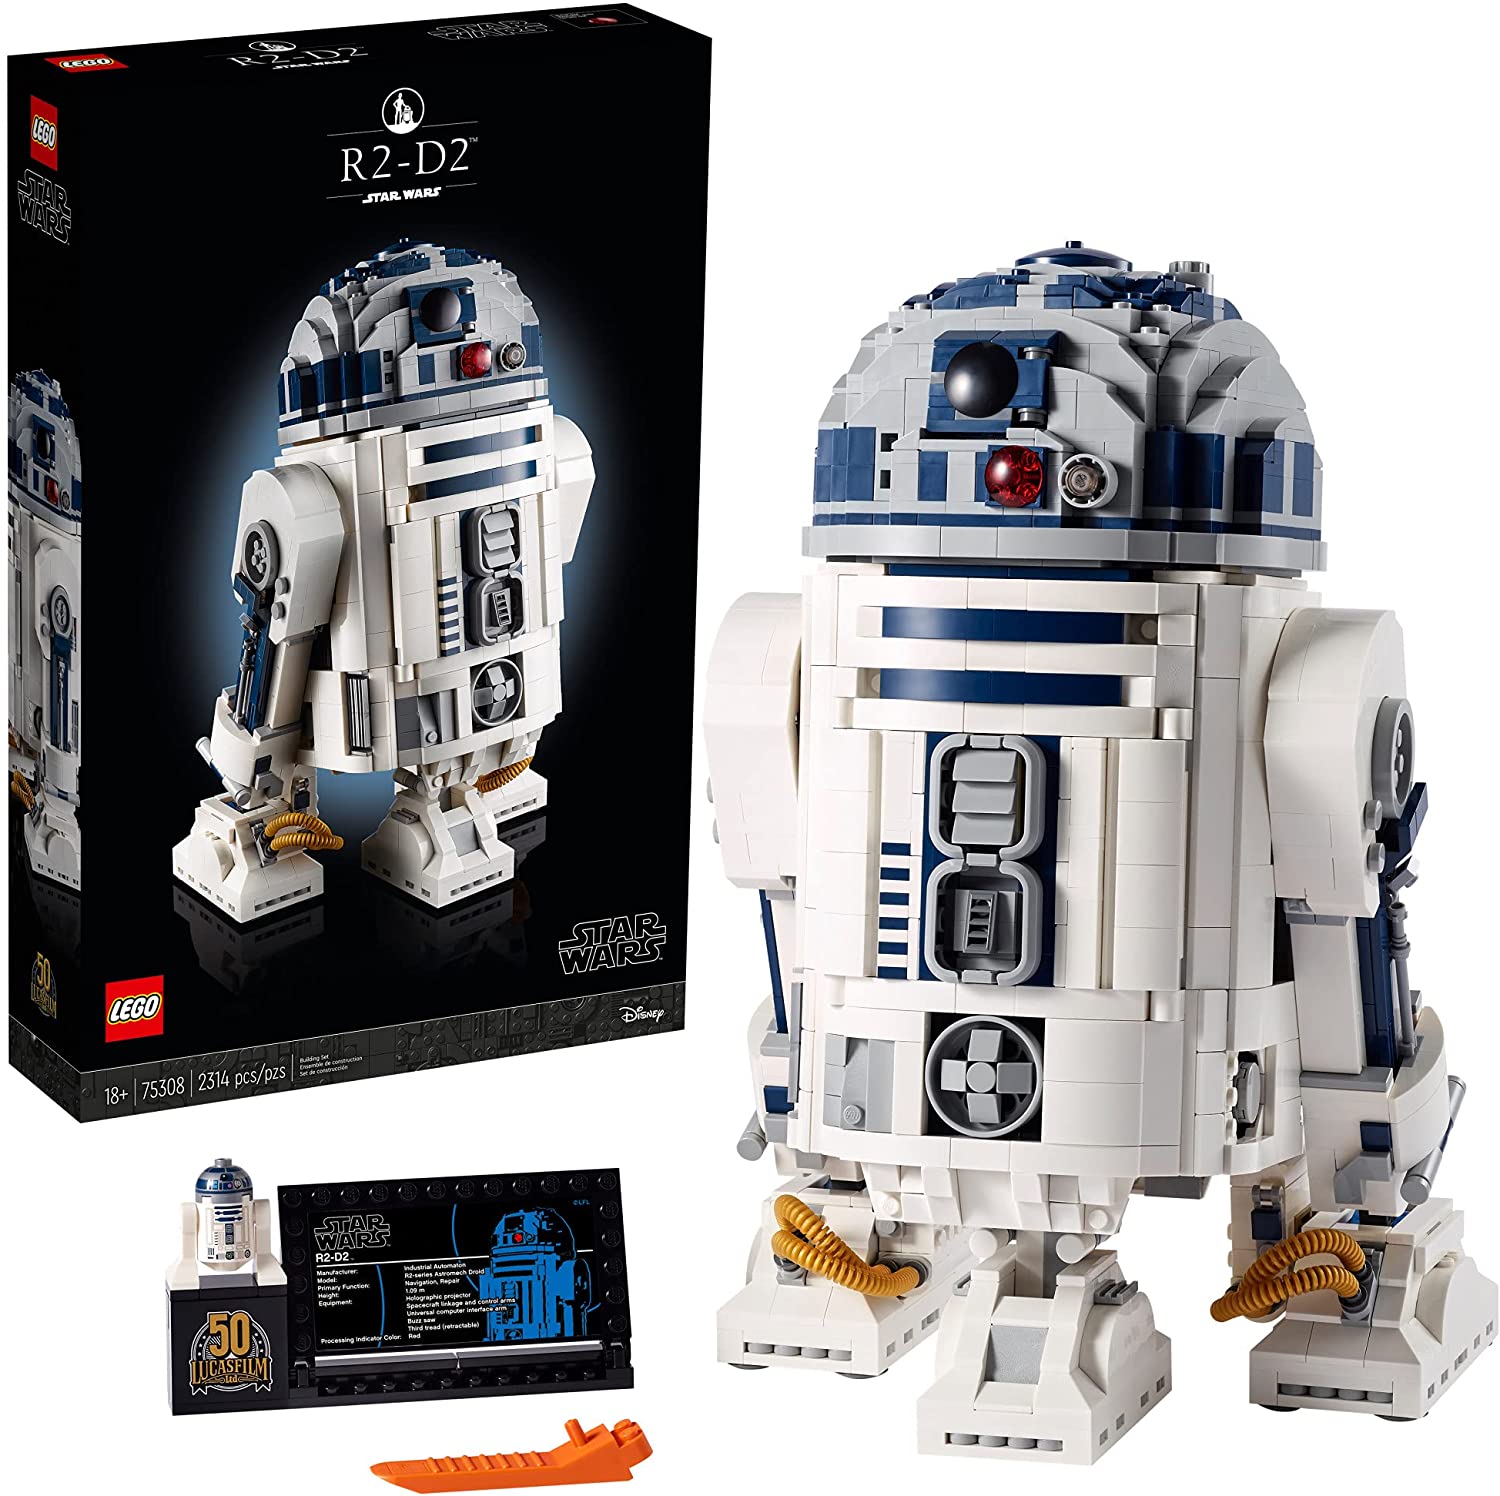 LEGO Star Wars R2-D2 75308 juguete de construcción coleccionable, nuevo 2021 (2314 piezas)